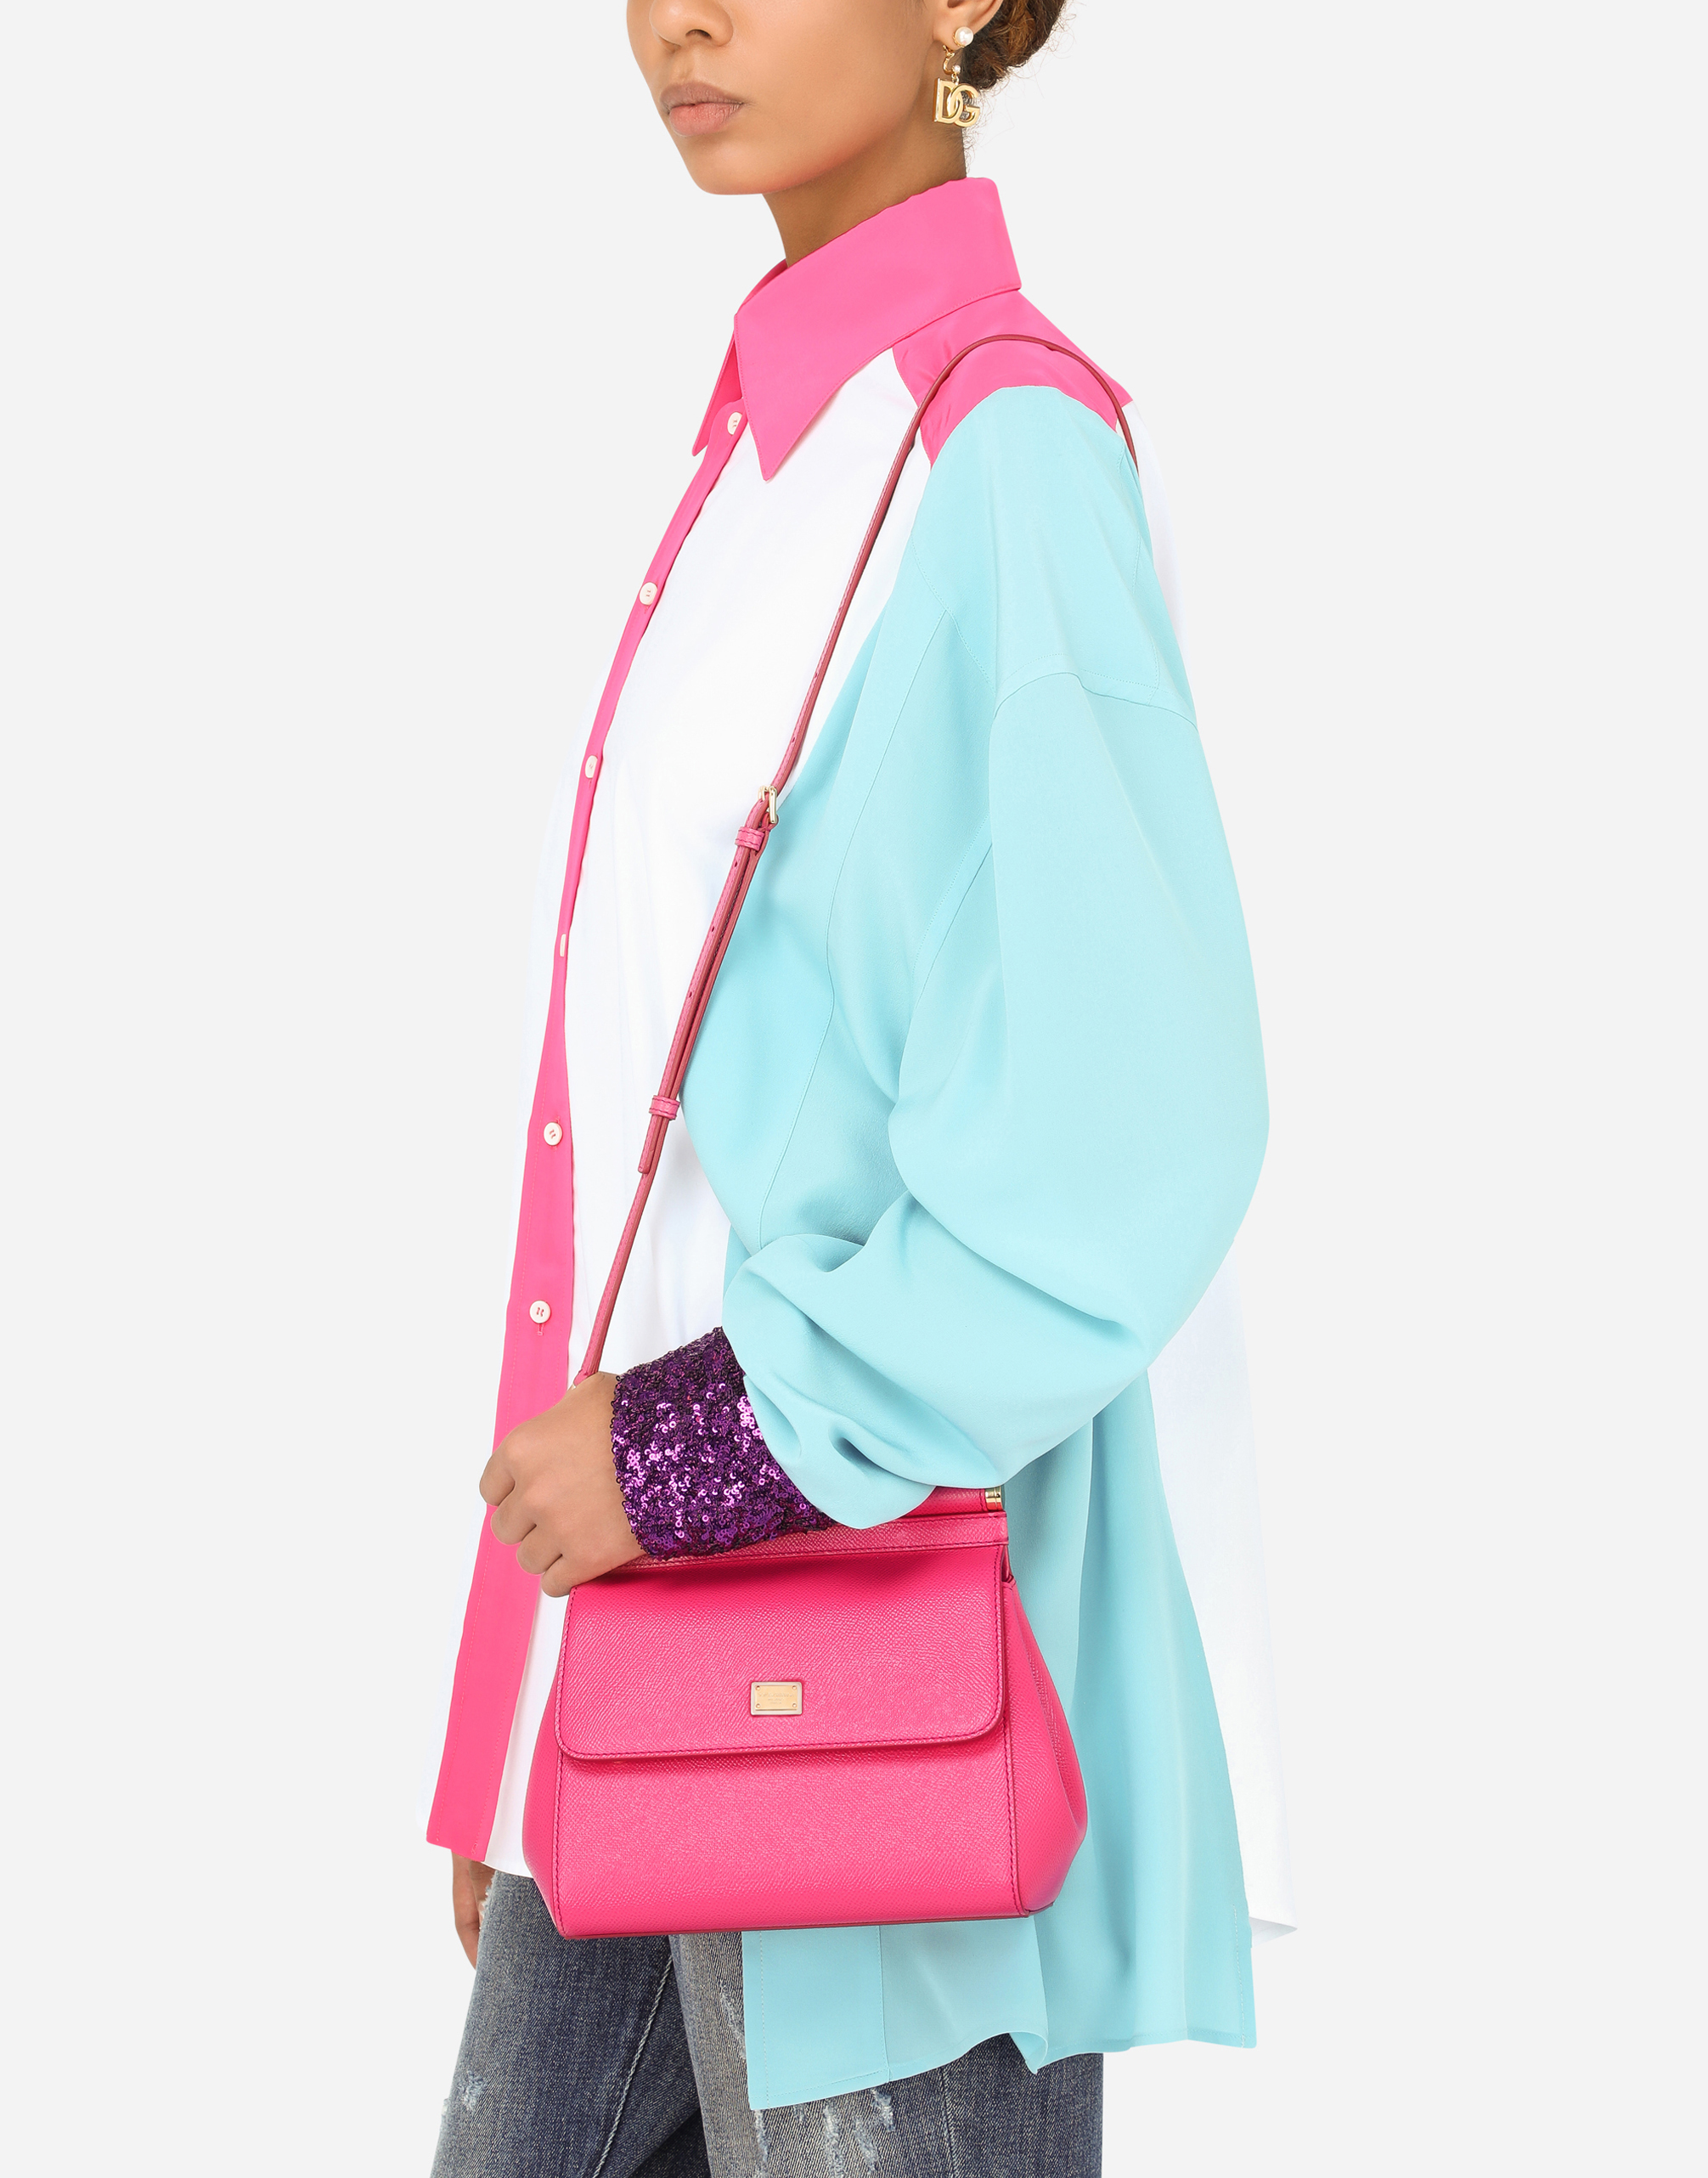 Medium Sicily handbag in Pink